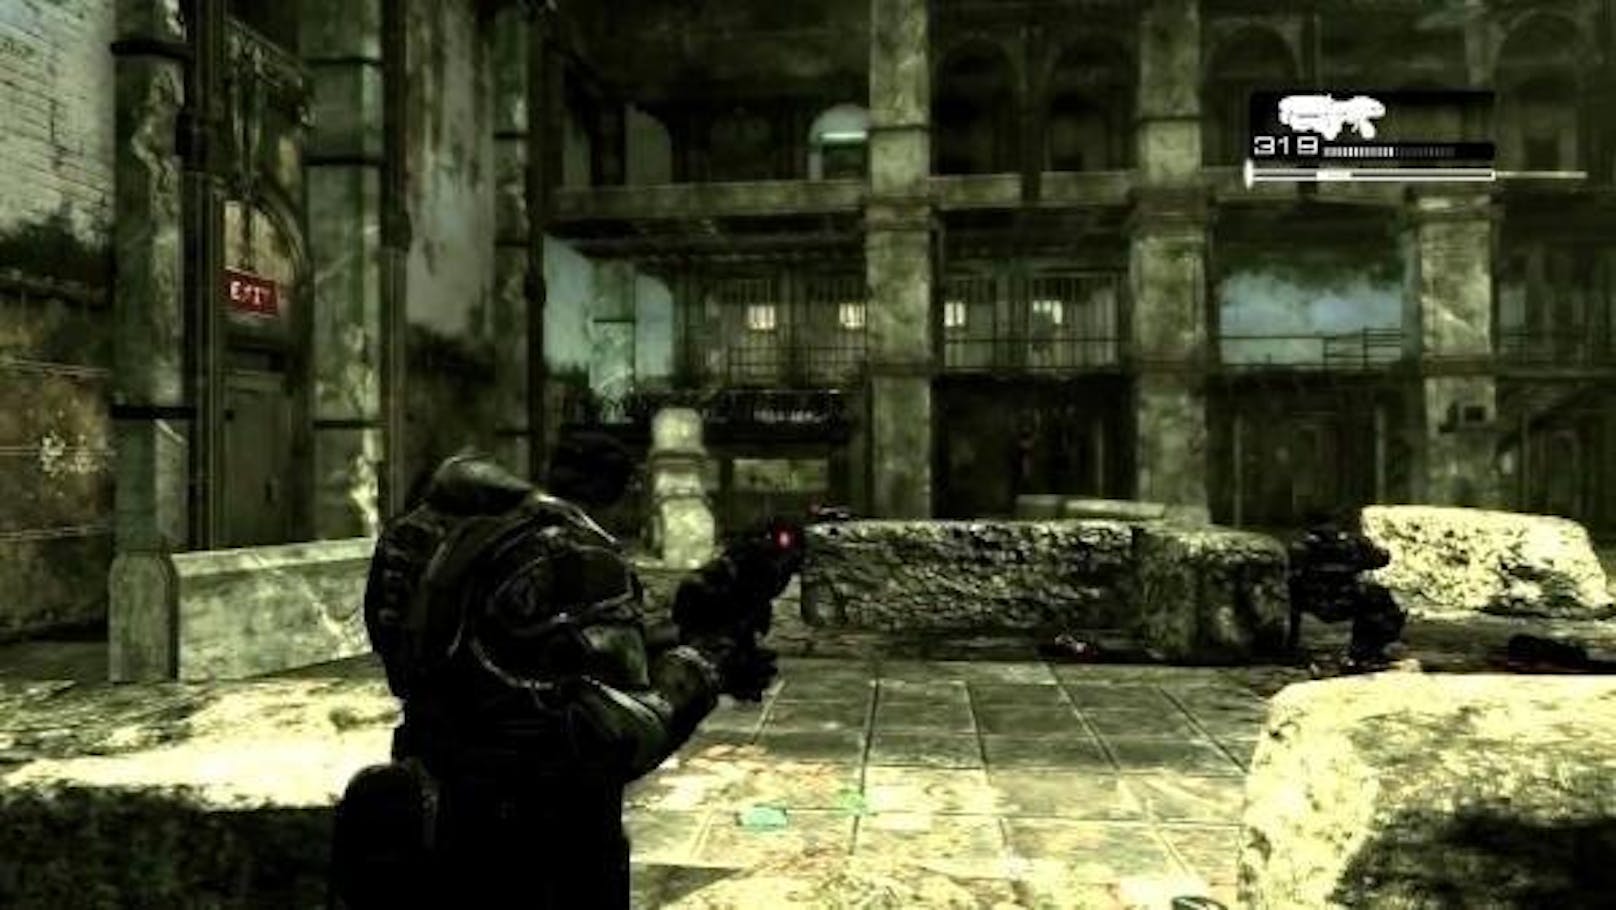 <b>2006:</b> Im November erschien "Gears of War", ein blutiger Third-Person-Shooter, in dem Weltraum-Marines versuchen ihren Planeten vor Monsterheuschrecken zu retten. Das Game erschien als Exklusivtitel für die Spielkonsole Xbox 360 und verkaufte sich millionenfach.